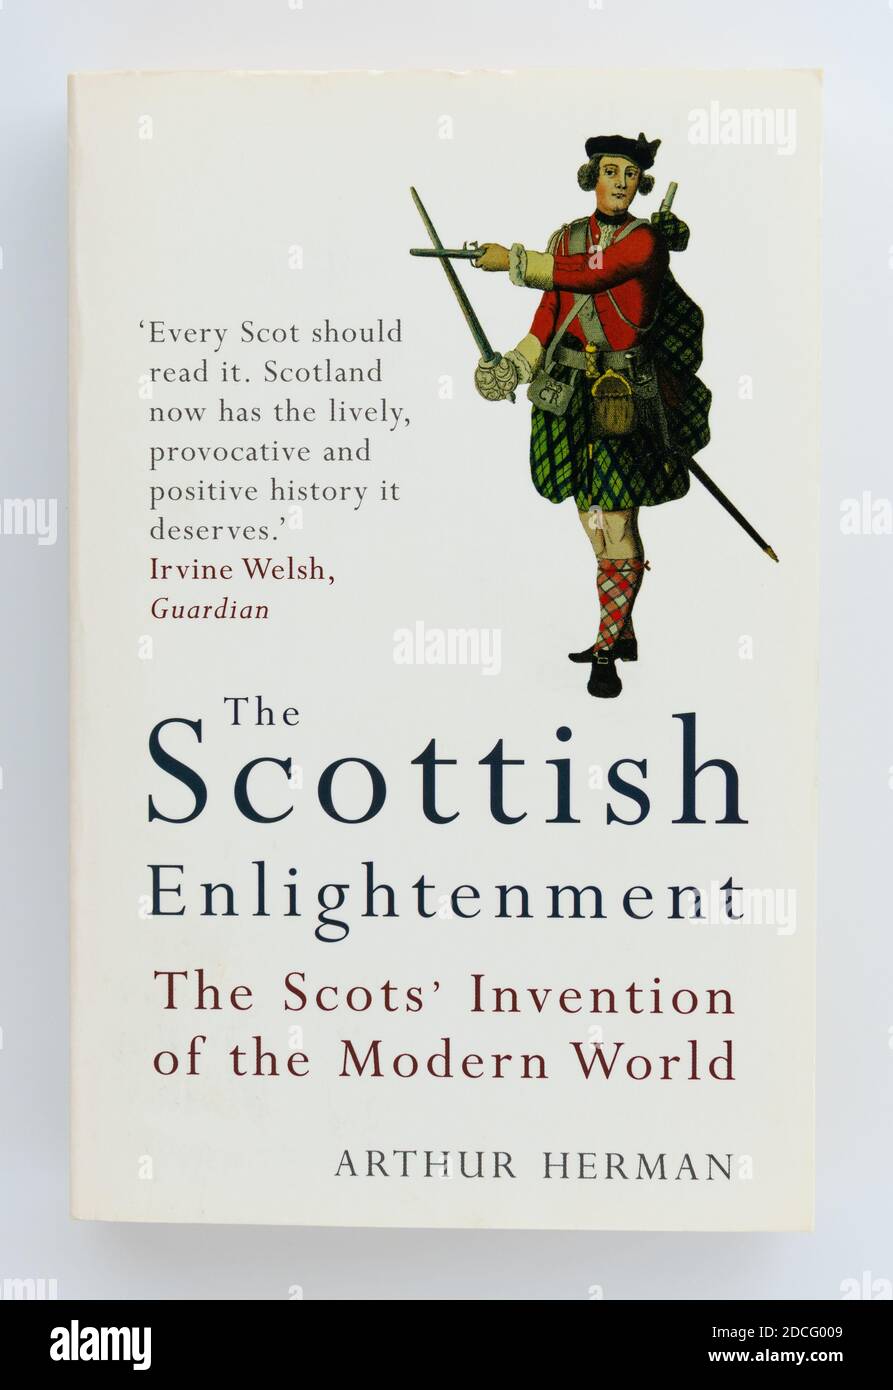 L'éclaircissement écossais - l'invention du monde moderne par les Écossais - Arthur Herman Banque D'Images